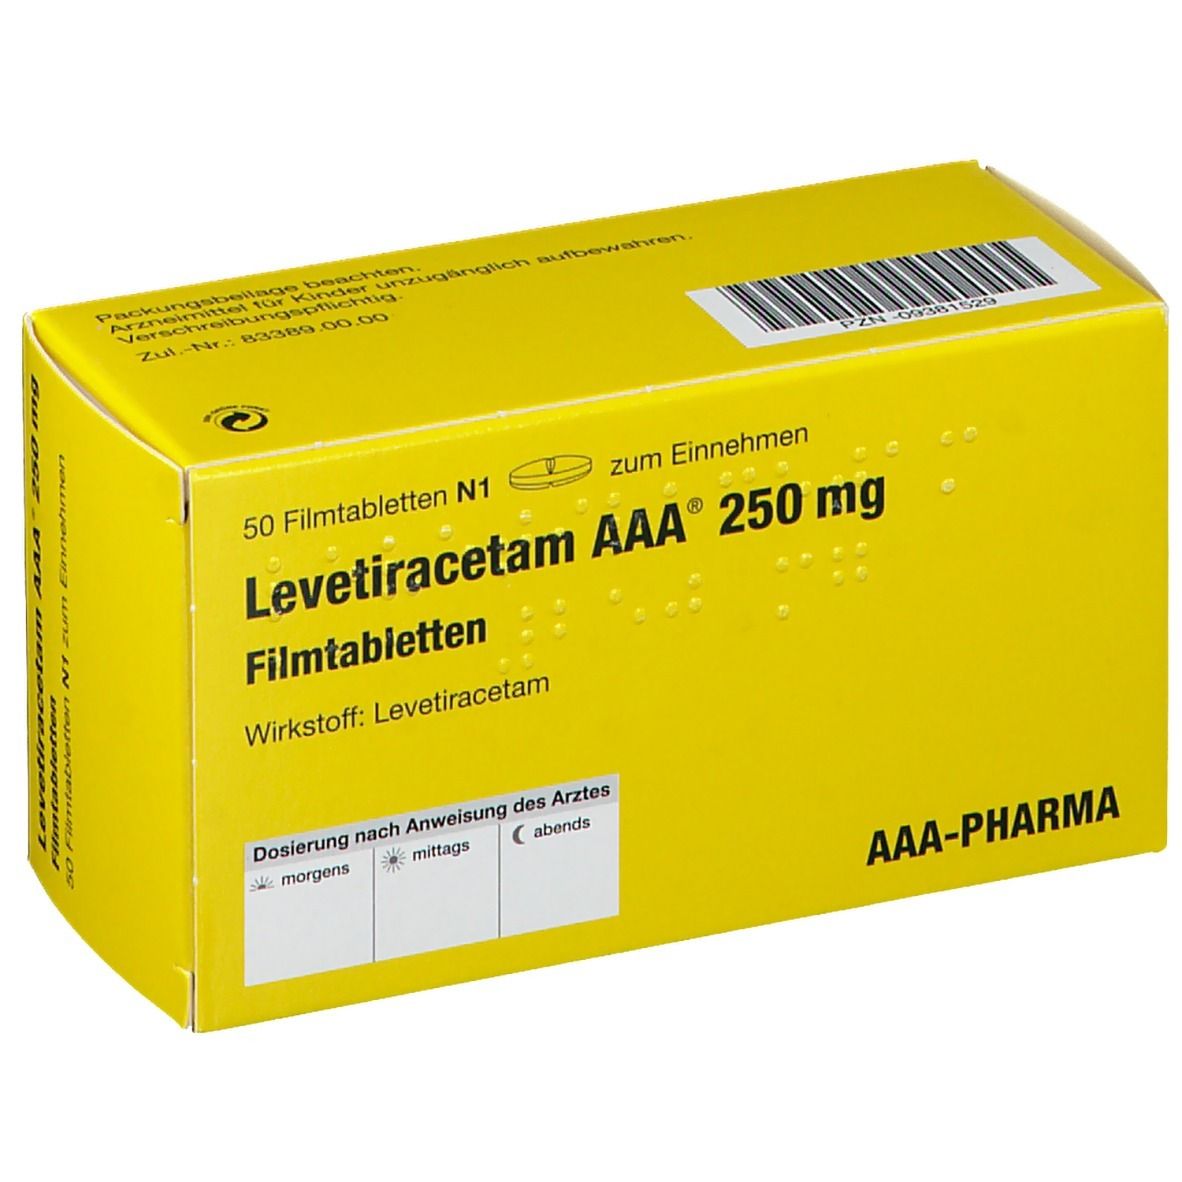 Levetiracetam AAA® 250 mg